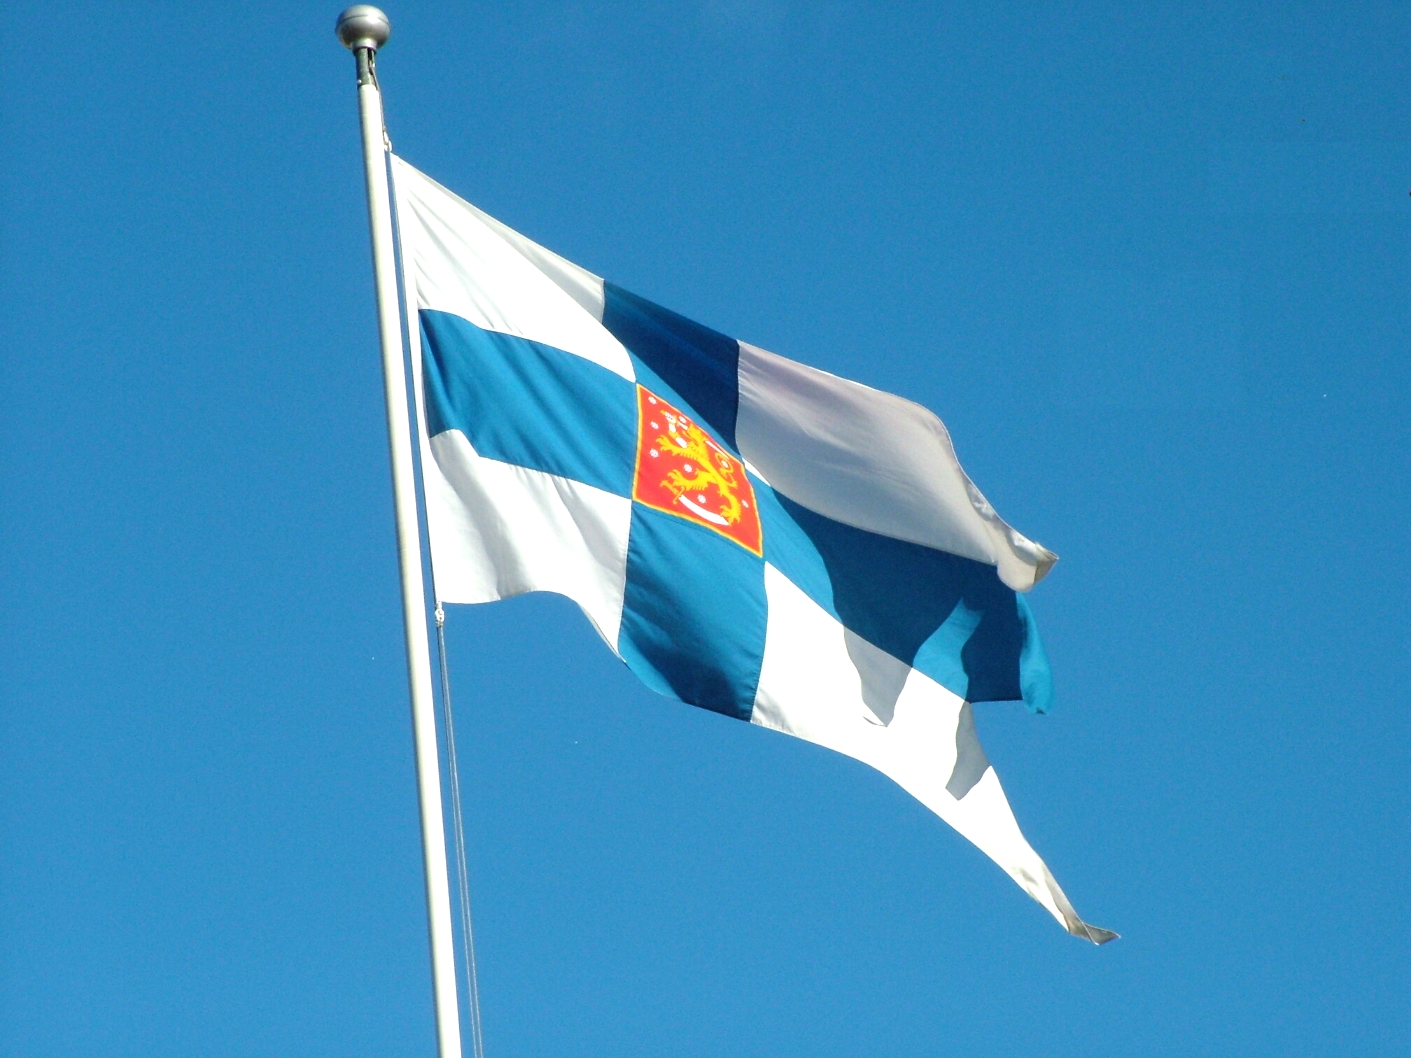 http://1.bp.blogspot.com/-Mfbb0nlZXII/ULfMPIX9KwI/AAAAAAAAETU/-MK5XdlpgQY/s1600/Flag+of+Finland+flags+wallpaper+(3).JPG